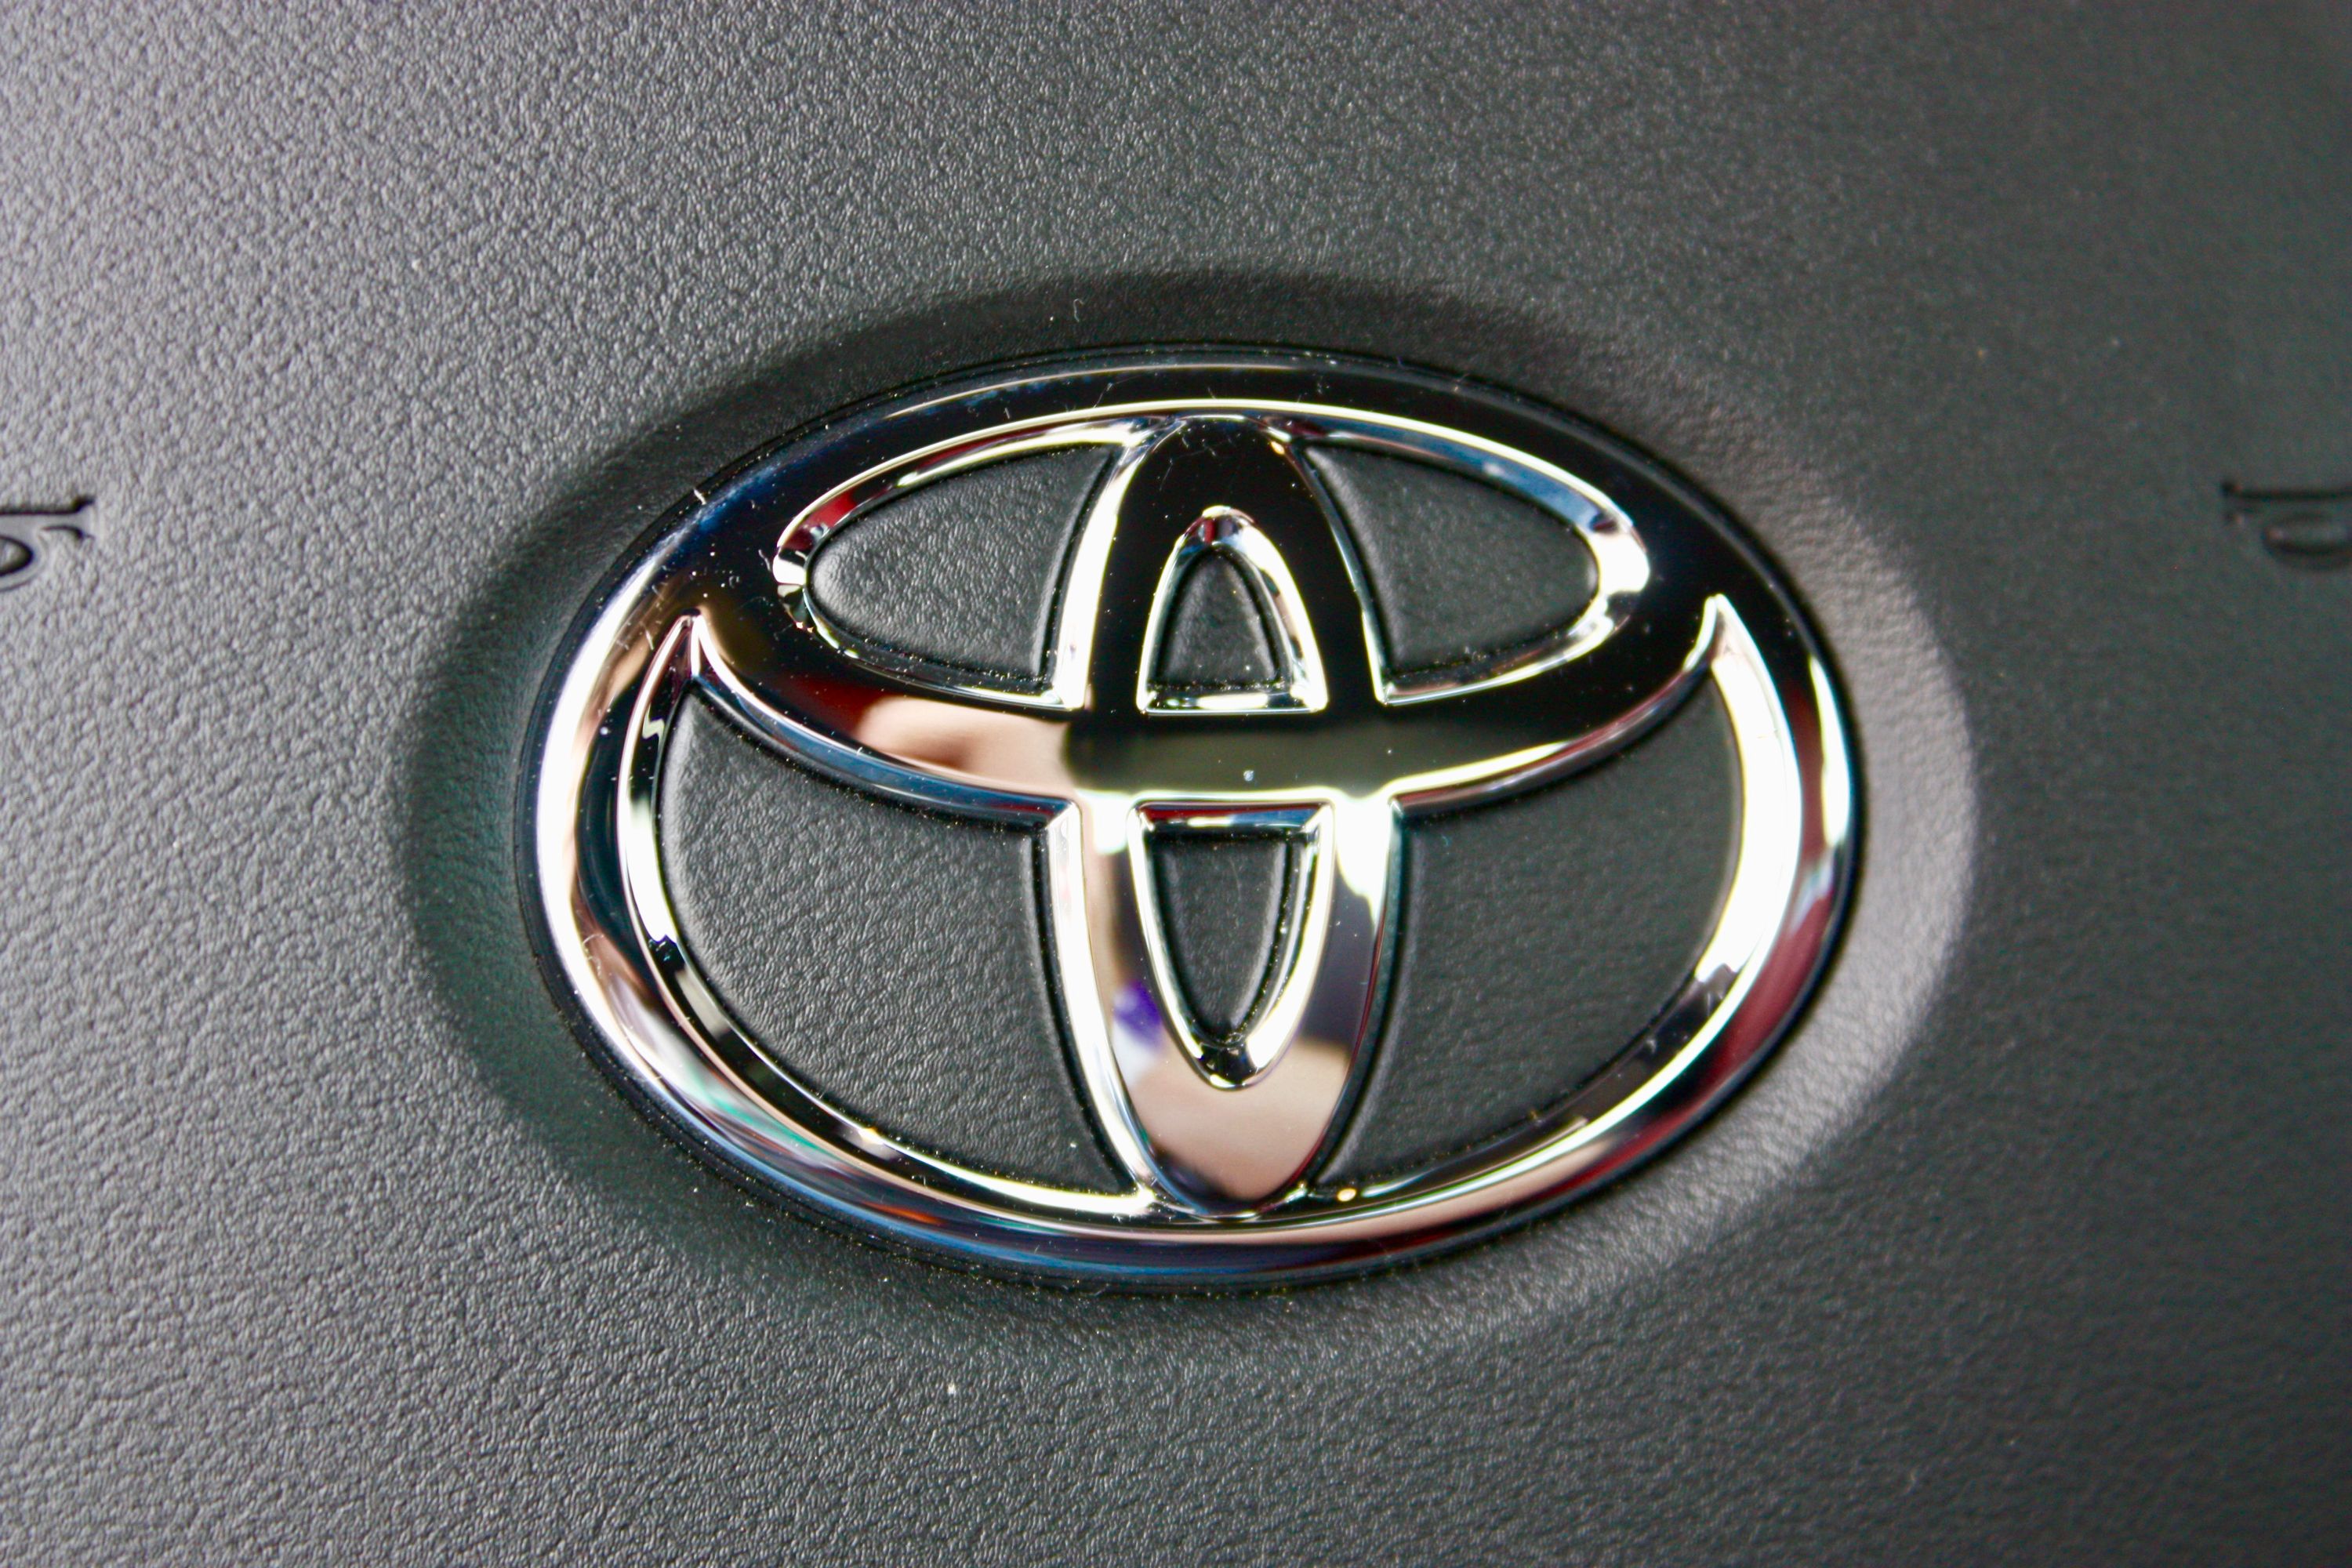 2020 Toyota Supra - Driven